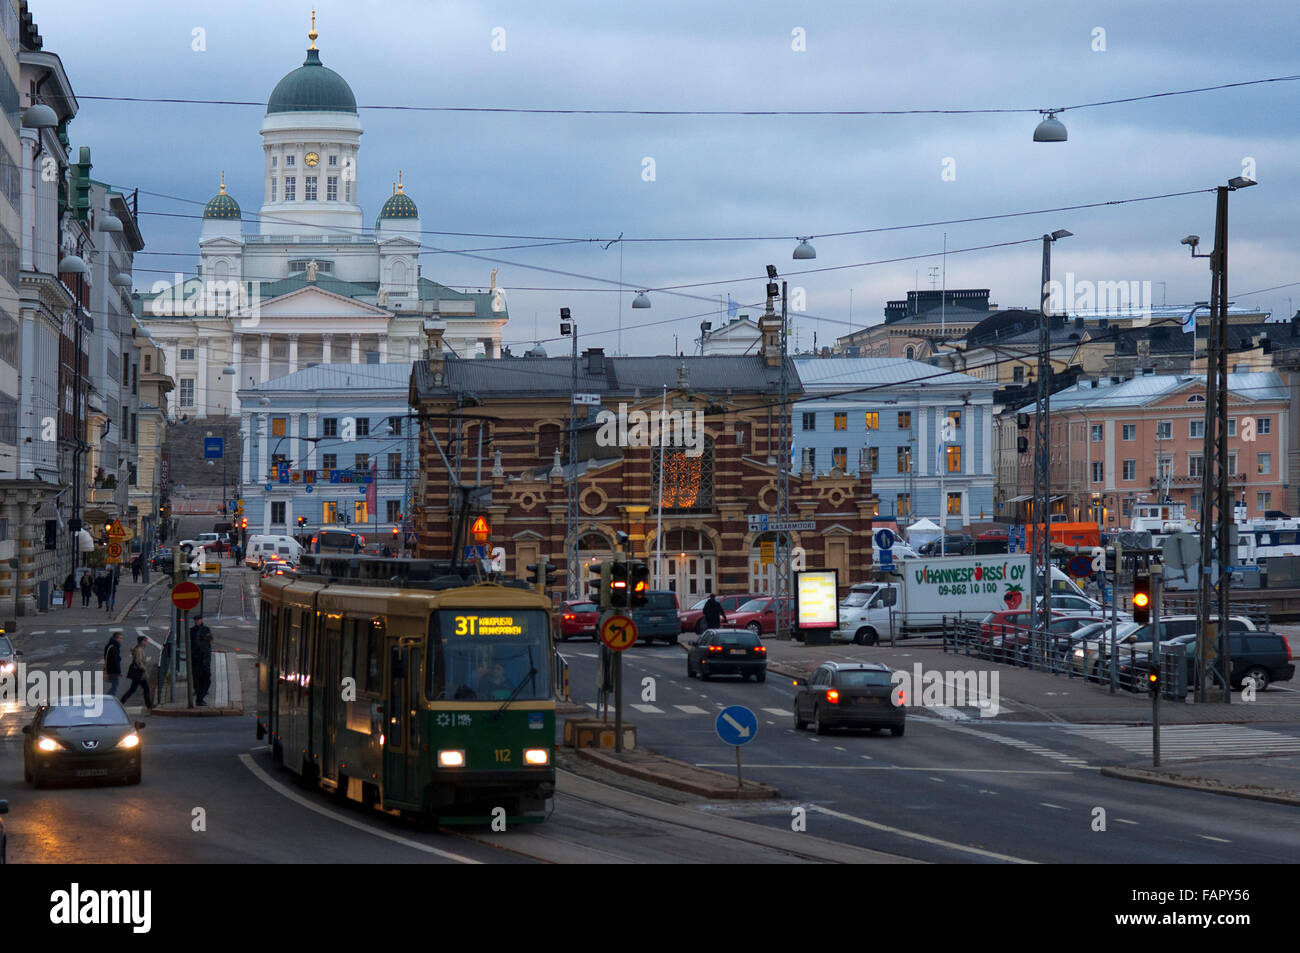 Vista generale della città di Helsinki con il tram, la quota di mercato e la Senaatintori Cattedrale Luterana dall'Eteläranta street. Foto Stock